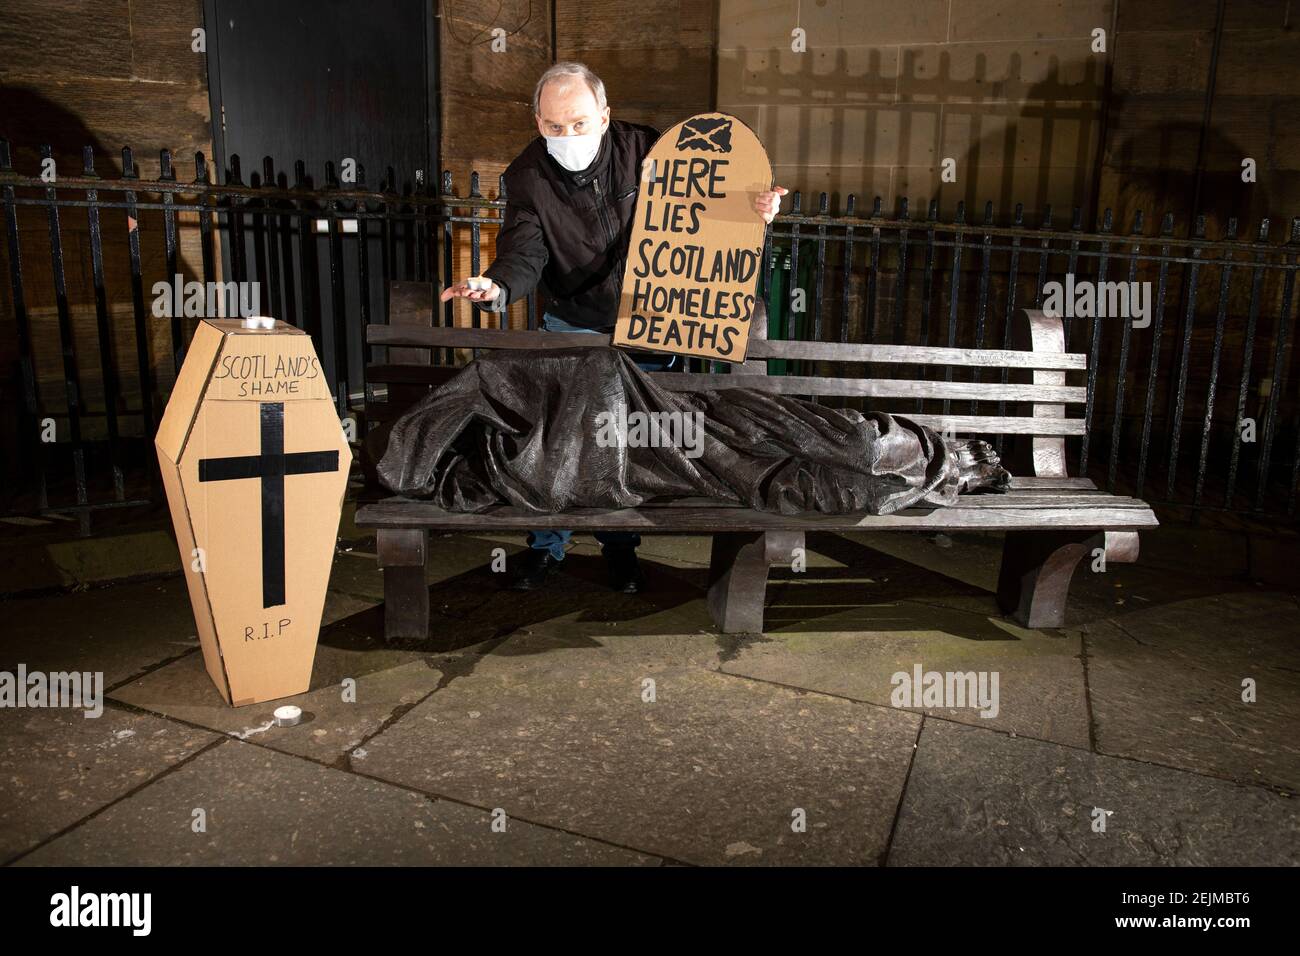 Glasgow, Scozia, Regno Unito. 22 Feb 2021. Nella foto: Sean Clerkin - Organizzazione degli inquilini scozzesi, con un cartello a forma di lapide che recita: "ECCO LE MORTI SENZA TETTO DI SCOTLANDS". Oggi 23 febbraio 21, il governo scozzese ha rilasciato i dati sui decessi per senzatetto 3 giorni prima, che sono aumentati del 11% rispetto allo scorso anno. Il link https://www.nrscotland.gov.uk/news/2021/homeless-deaths-2019 mostra l'articolo oggi. Credit: Colin Fisher/Alamy Live News Foto Stock